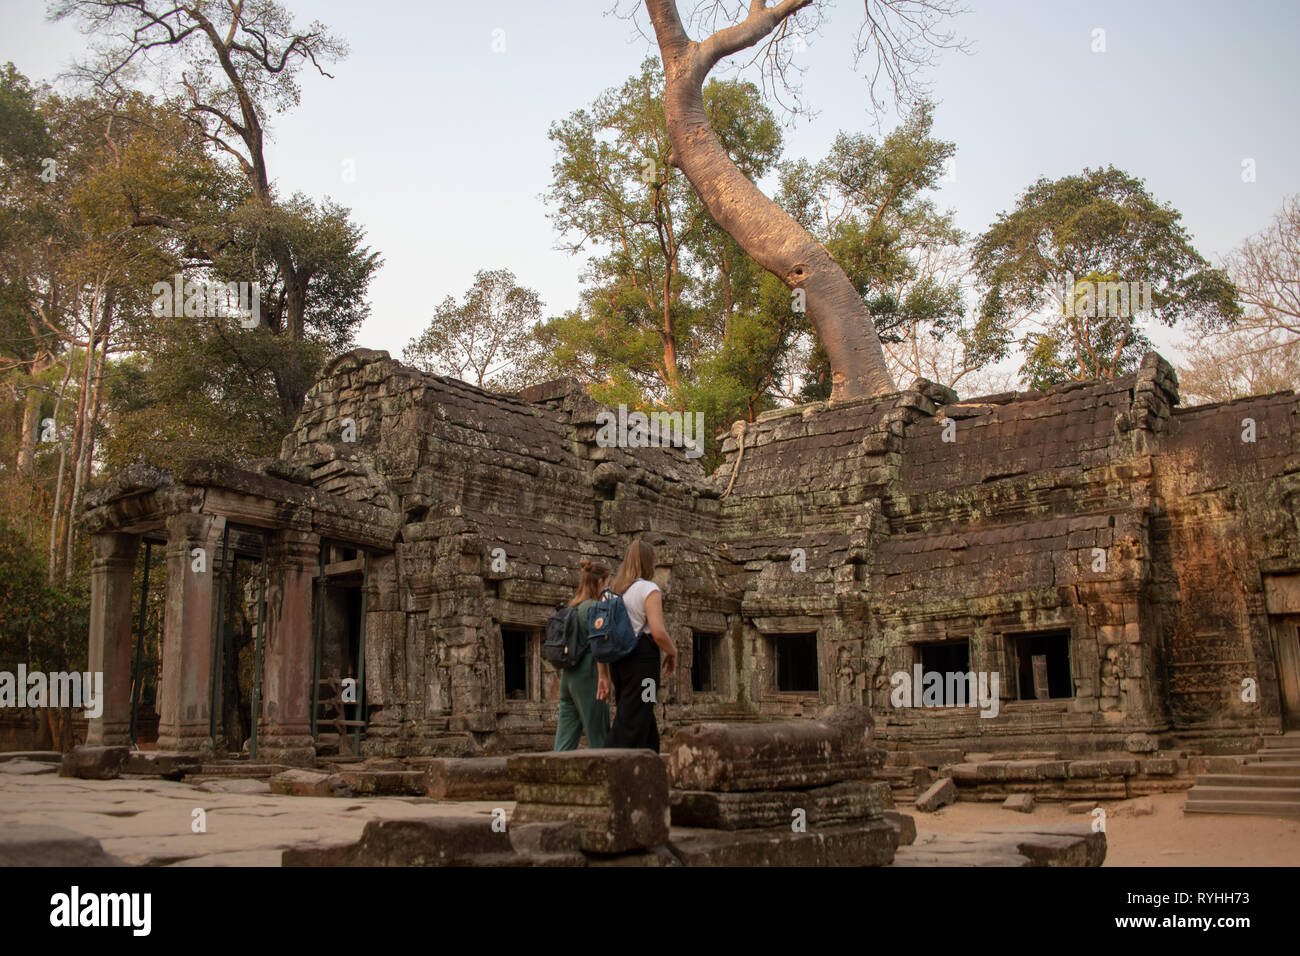 Angkor Wat, Siem Reap, Cambodge, le jeudi 14 mars 2019. Siem Reap , Cambodge météo : La période de temps sec chaud continue avec un maximum de 36 degrés et les bas de 26 degrés. Les touristes qui visitent les temples d'Angkor Wat en début de matinée pour éviter la chaleur extrême plus tard dans la journée. Angkor Wat est un temple complexe au Cambodge et l'un des plus grands monuments religieux dans le monde, sur un site de 162,6 hectares. Credit : WansfordPhoto/Alamy Live News Banque D'Images